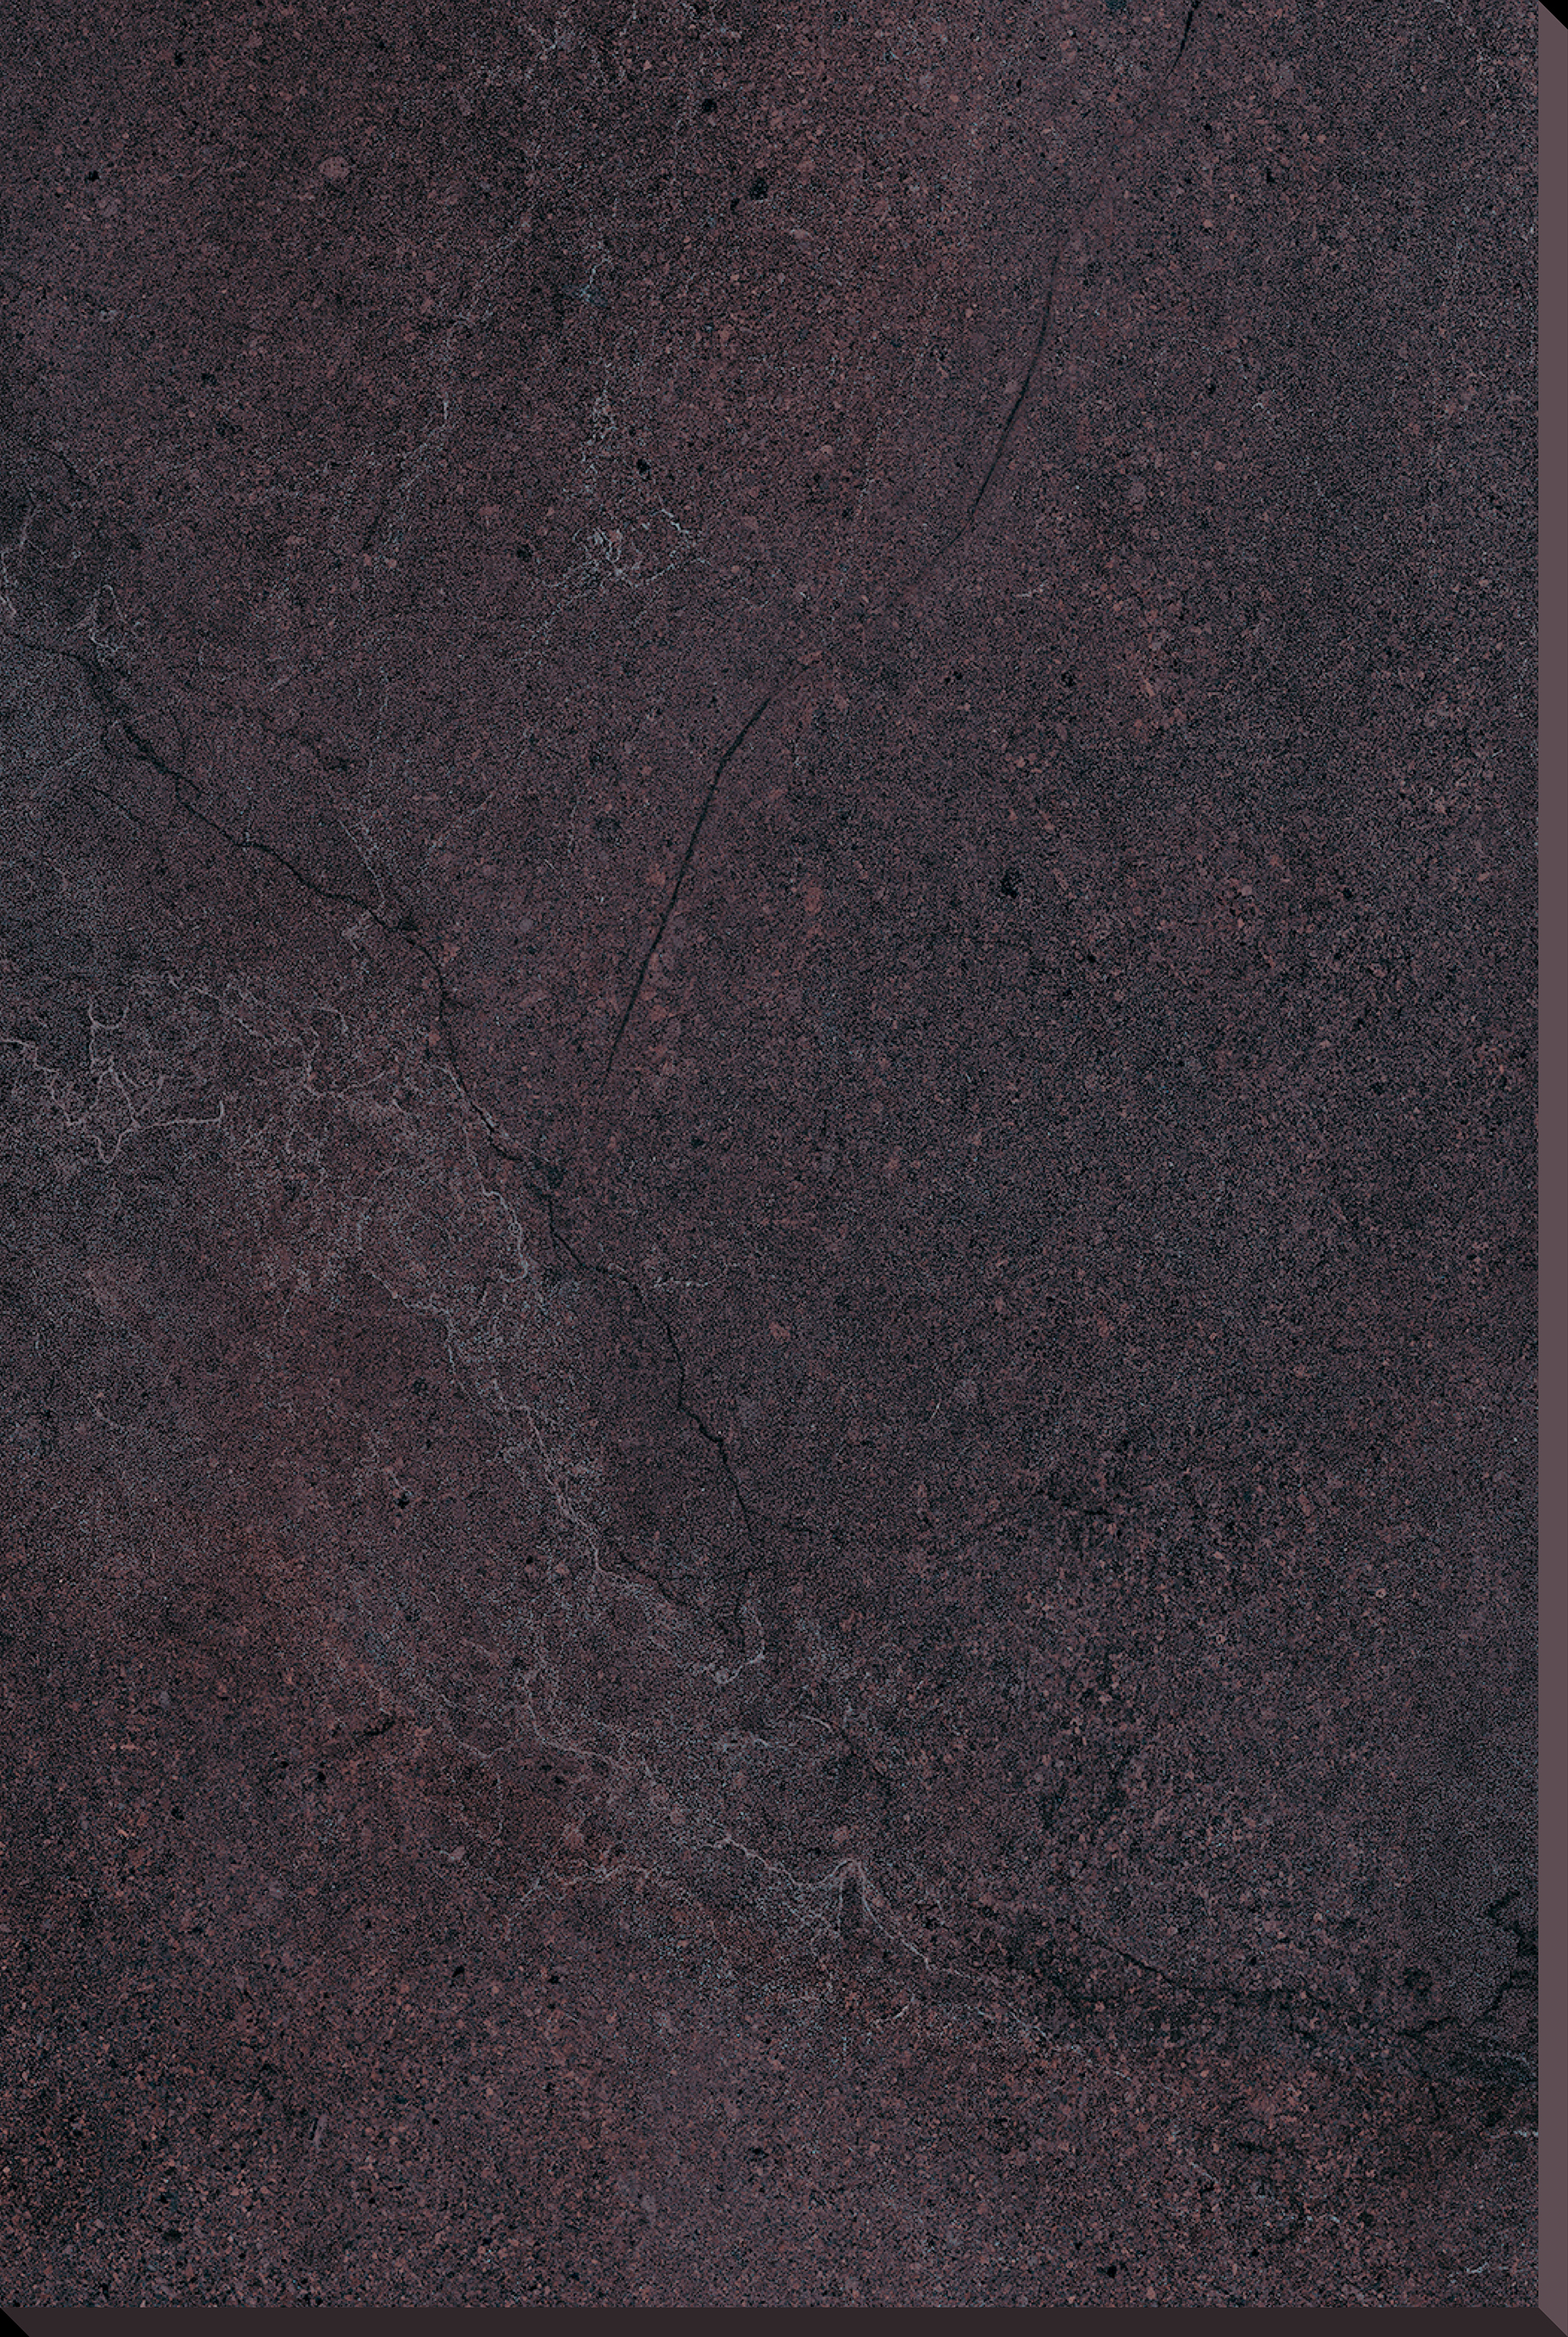 Novabell Aspen Rock Grey Outwalk – Naturale Rock Grey APN169R natur outdoor 60x90cm rektifiziert 20mm